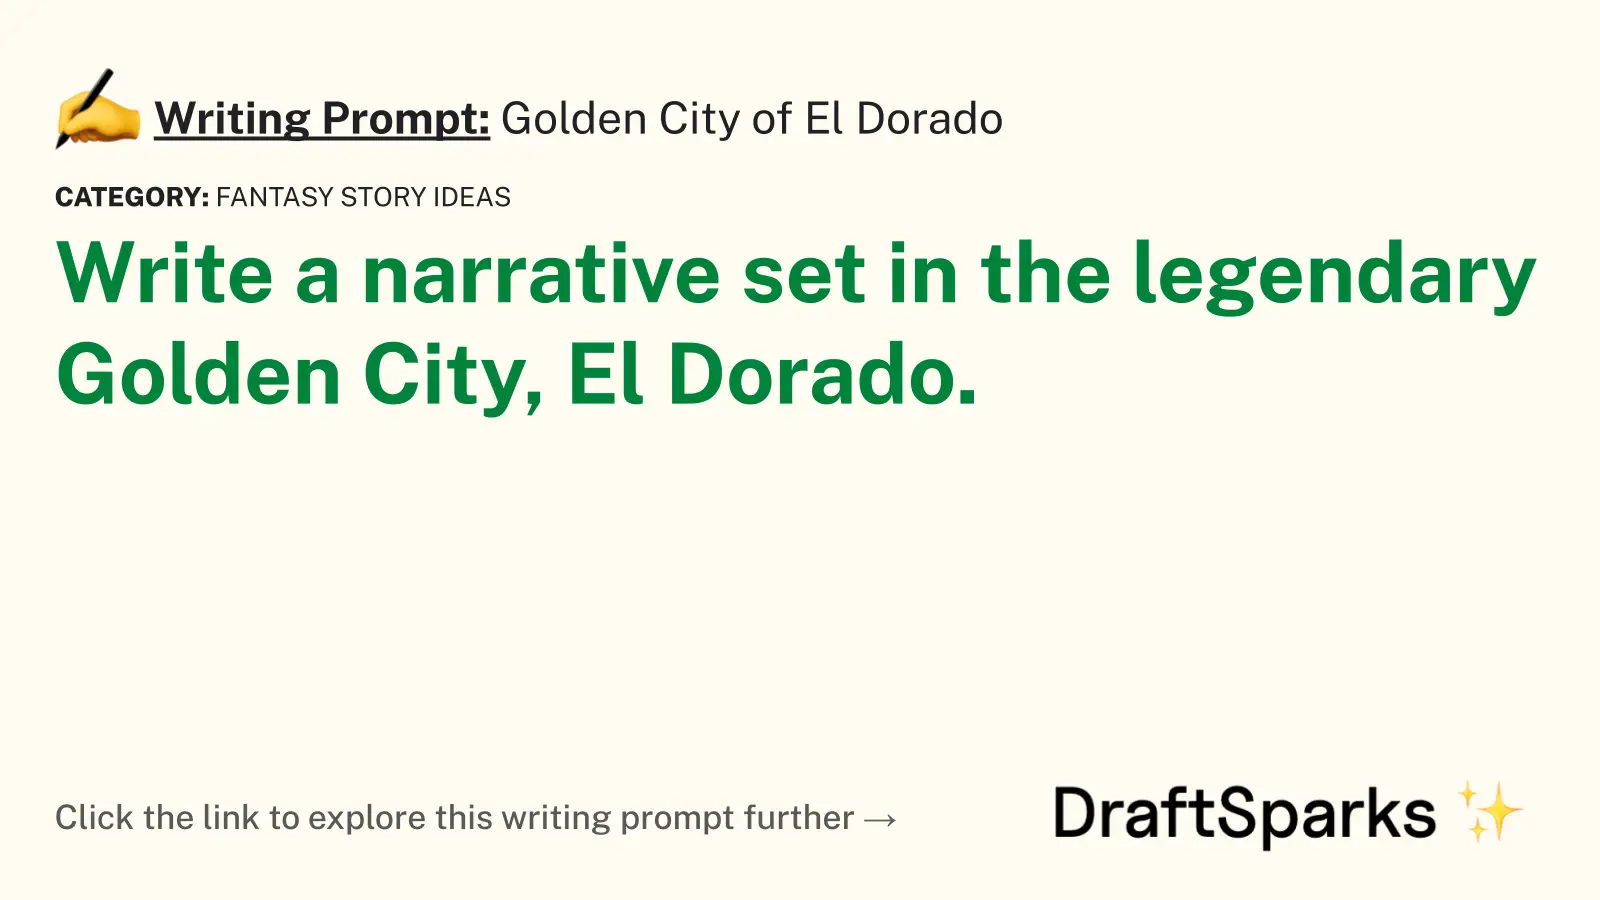 Golden City of El Dorado